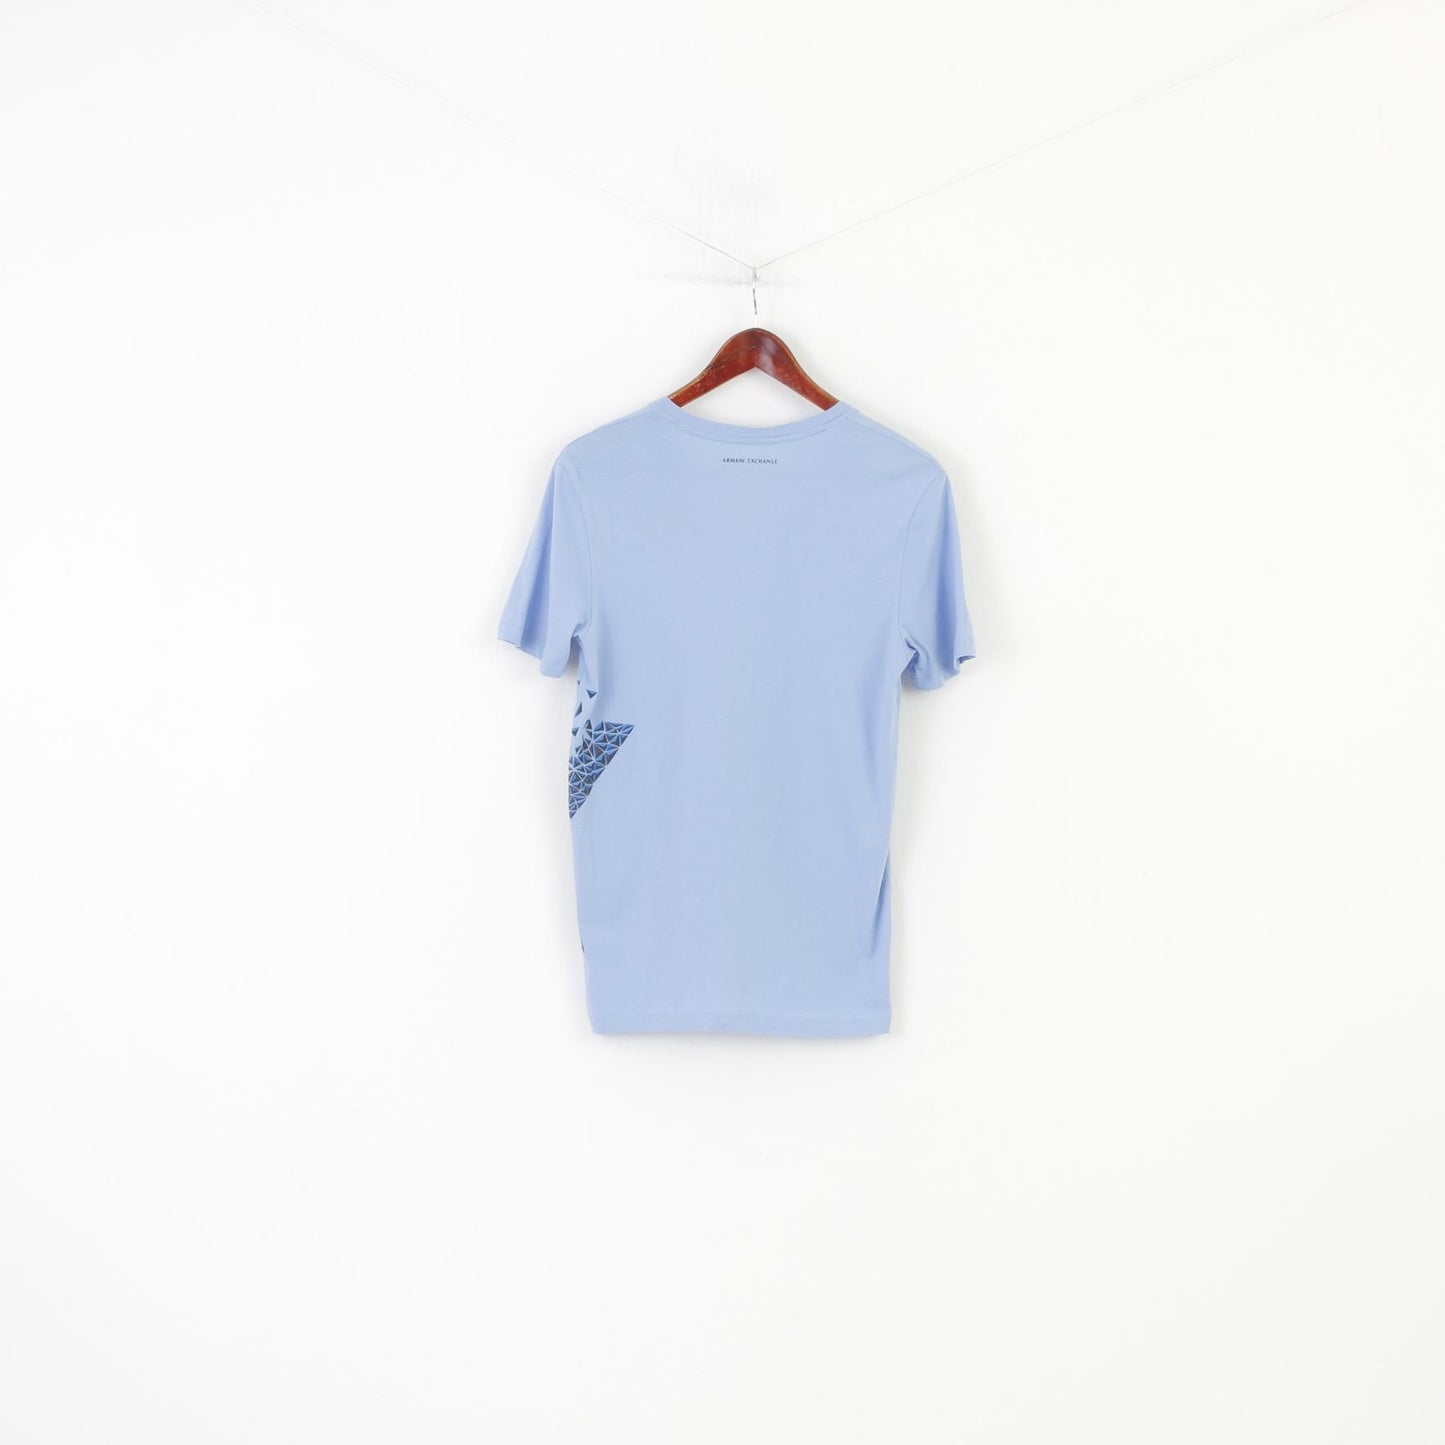 Armani Exchange T-Shirt Donna S Collo a V Blu Cotone Manica Corta